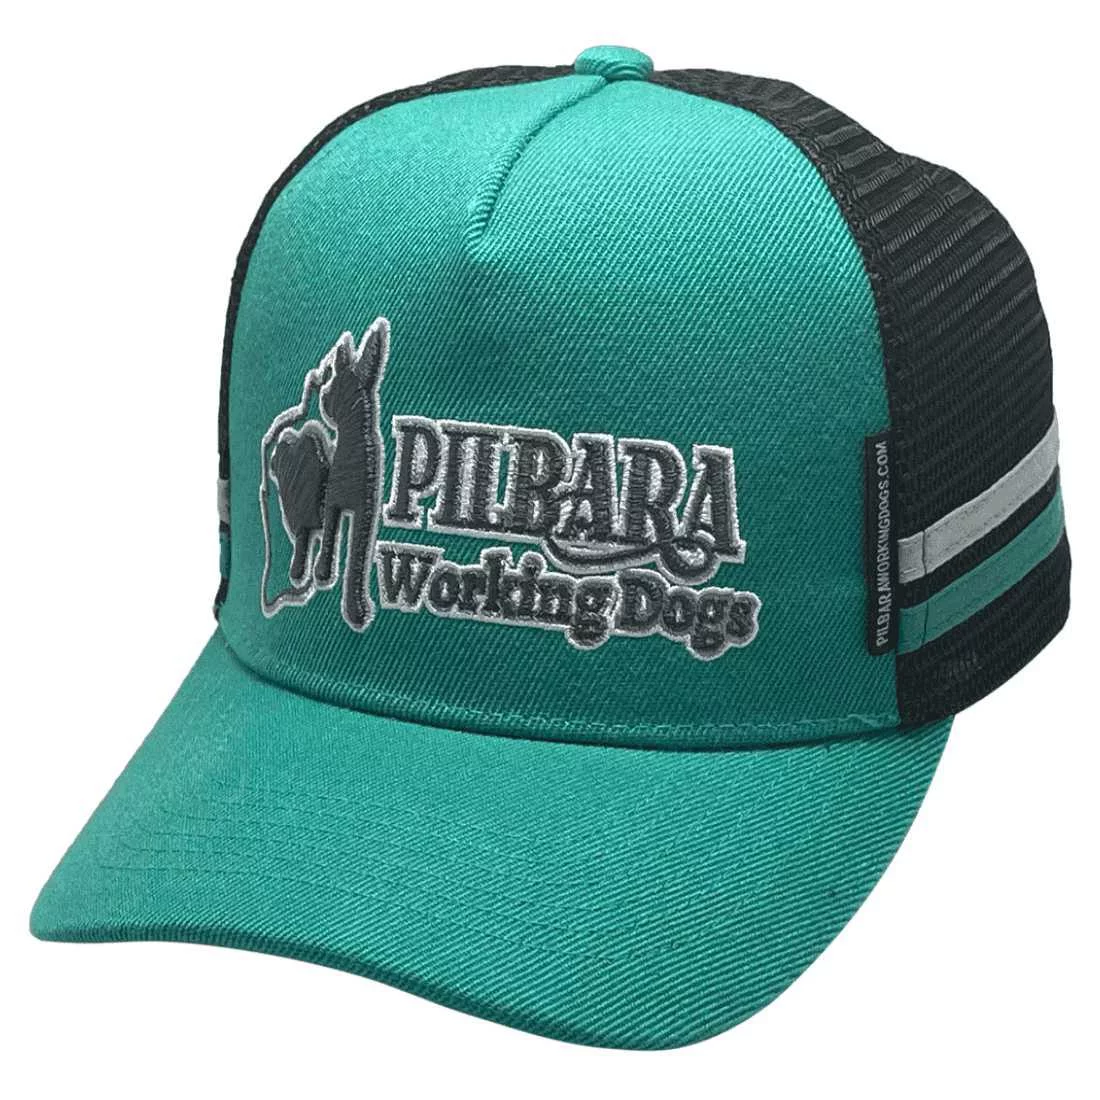 Pilbara Working Dogs LP Midrange Aussie Trucker Hats